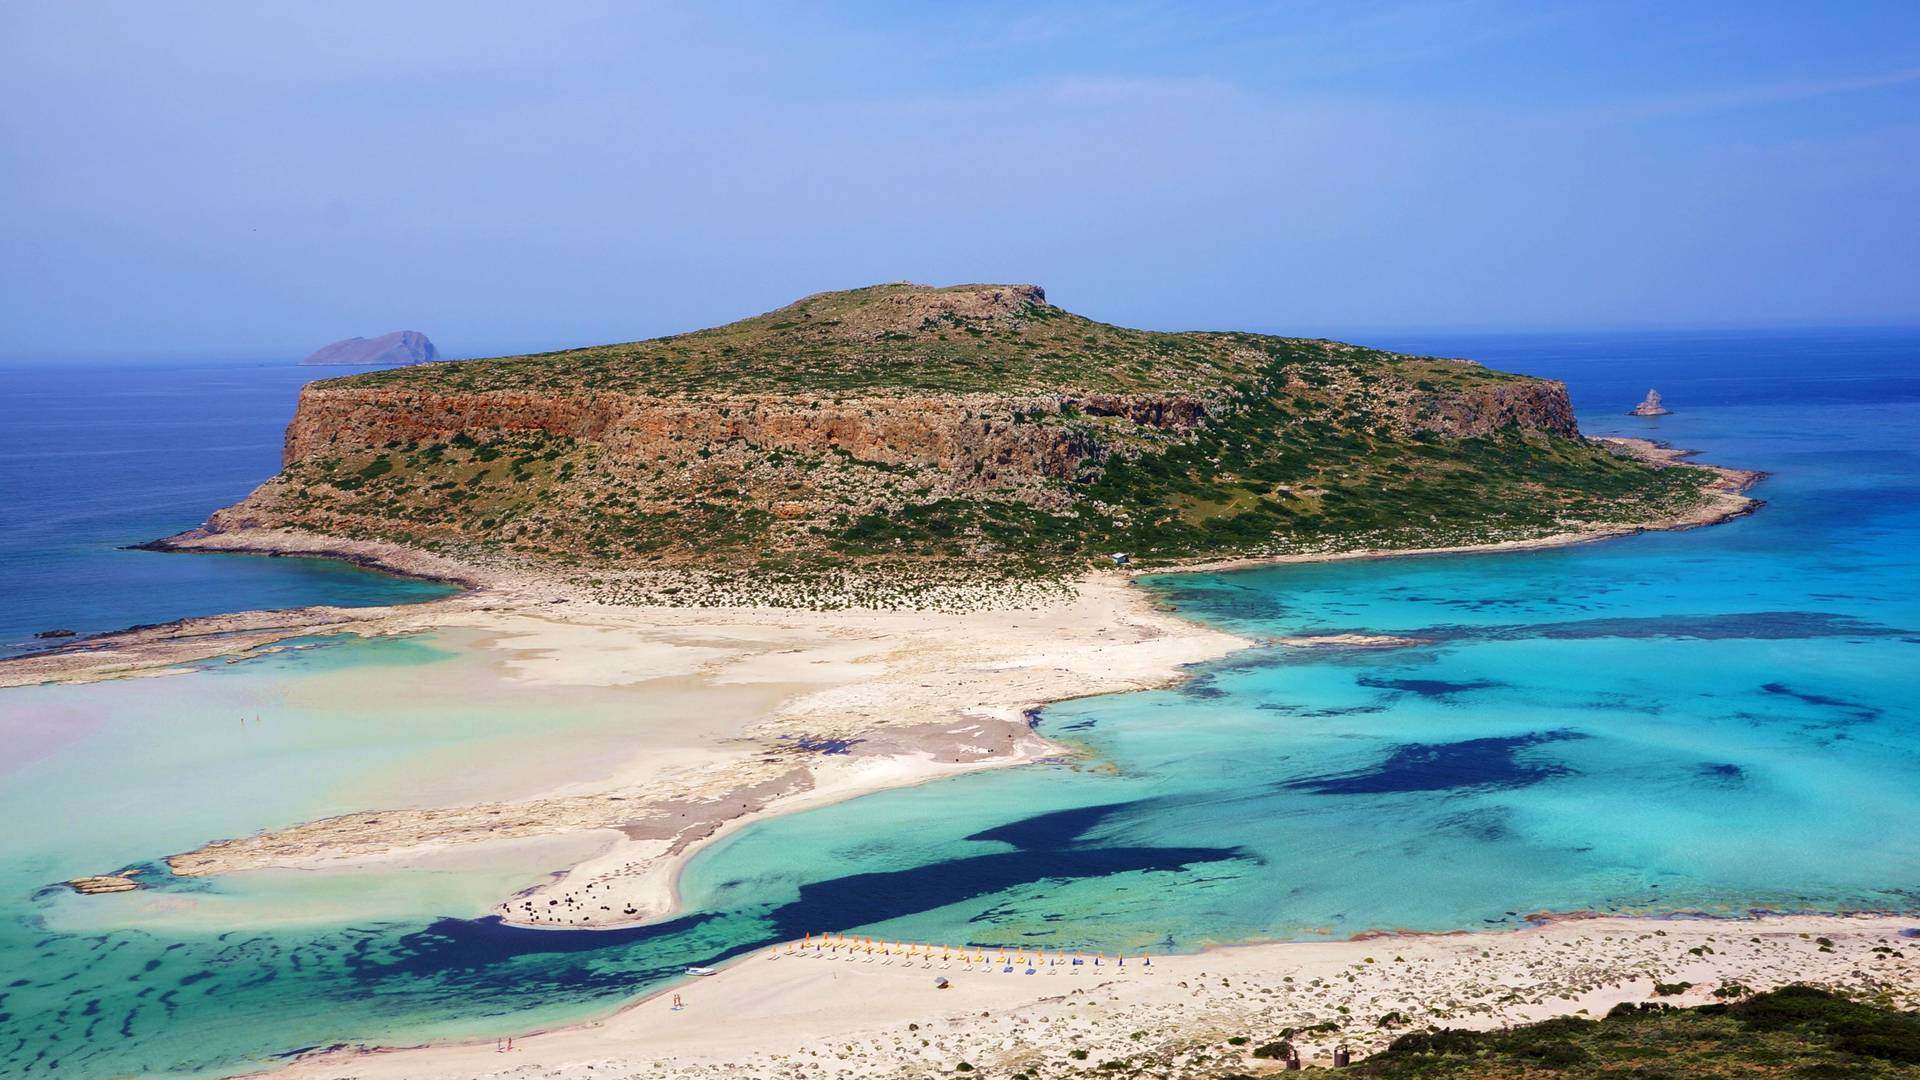 La herencia natural de Creta, la playa de Balos